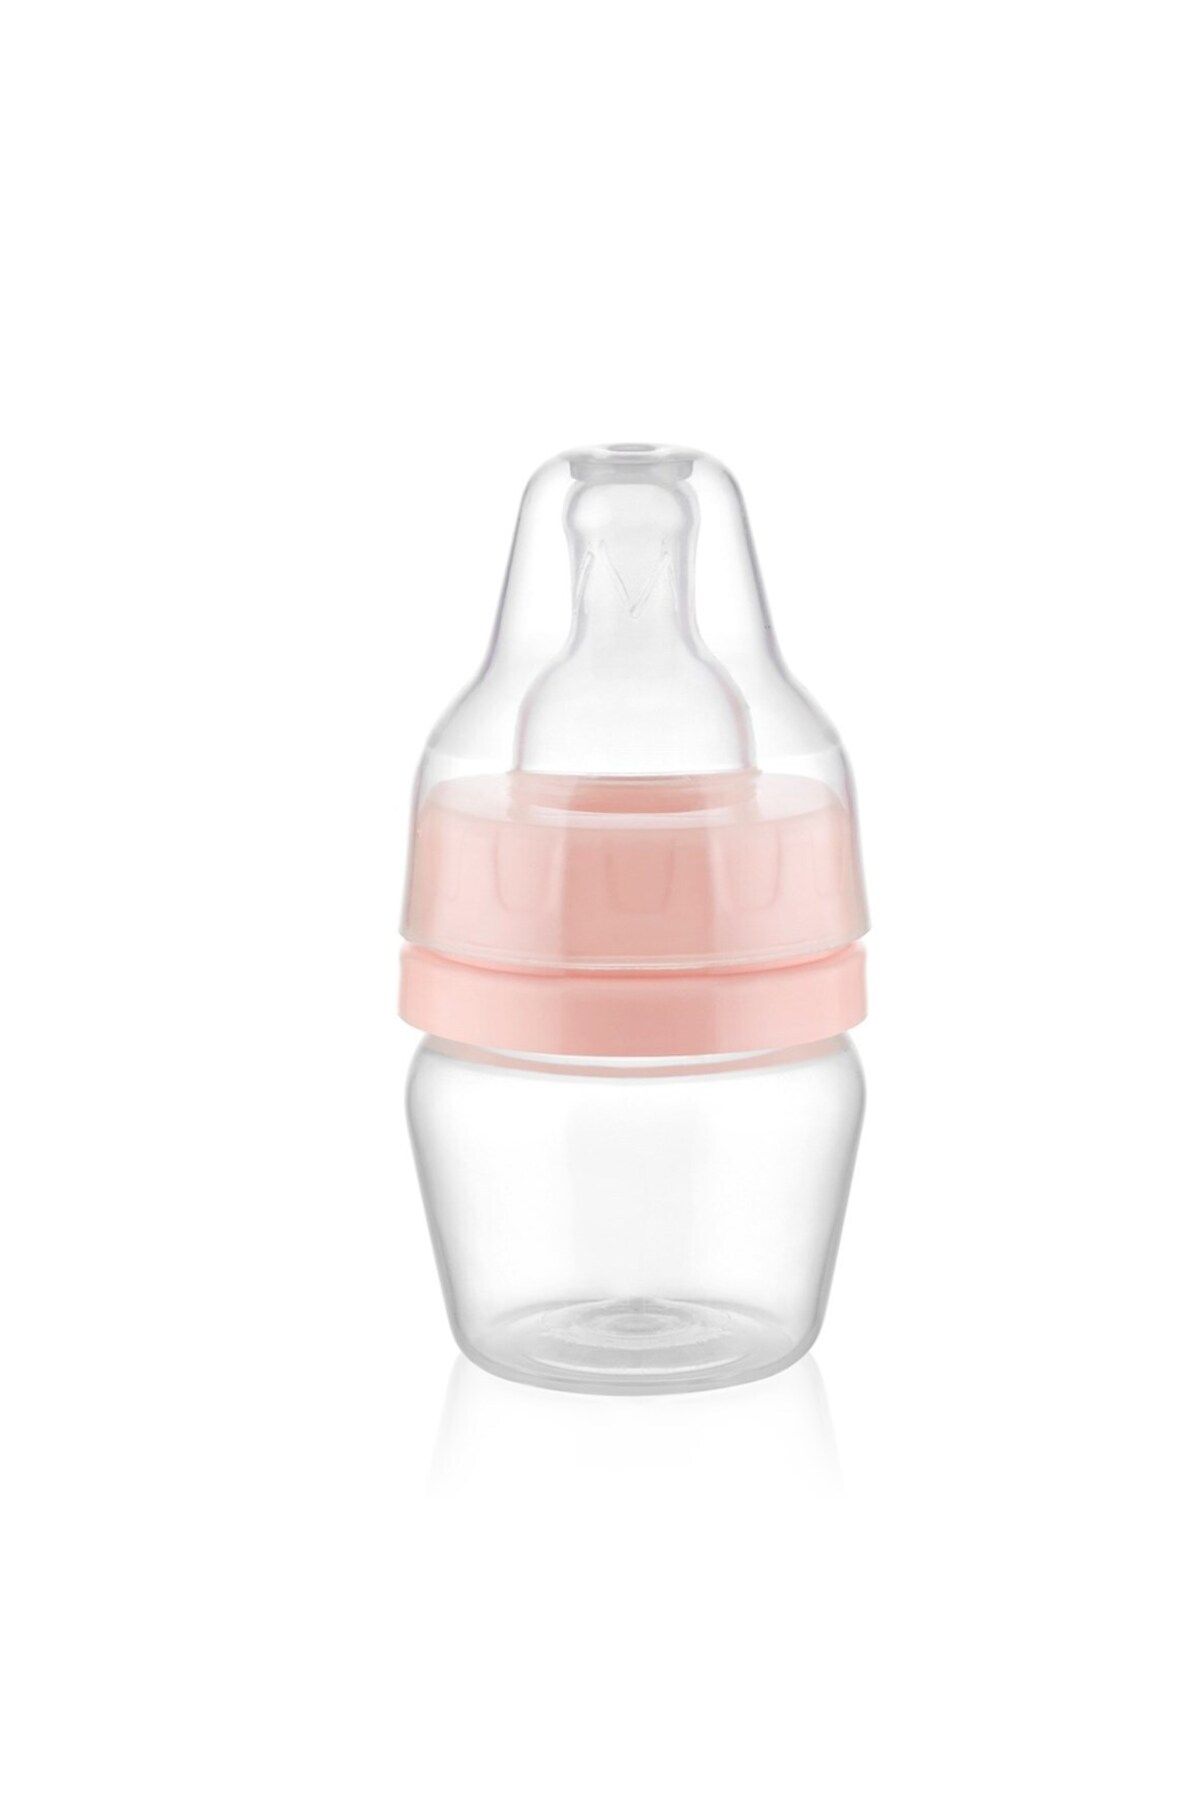 Babyjem Marka: Mini Alıştırma Bardağı Ve Suluk, Pembe Kategori: Alıştırma Bardağı